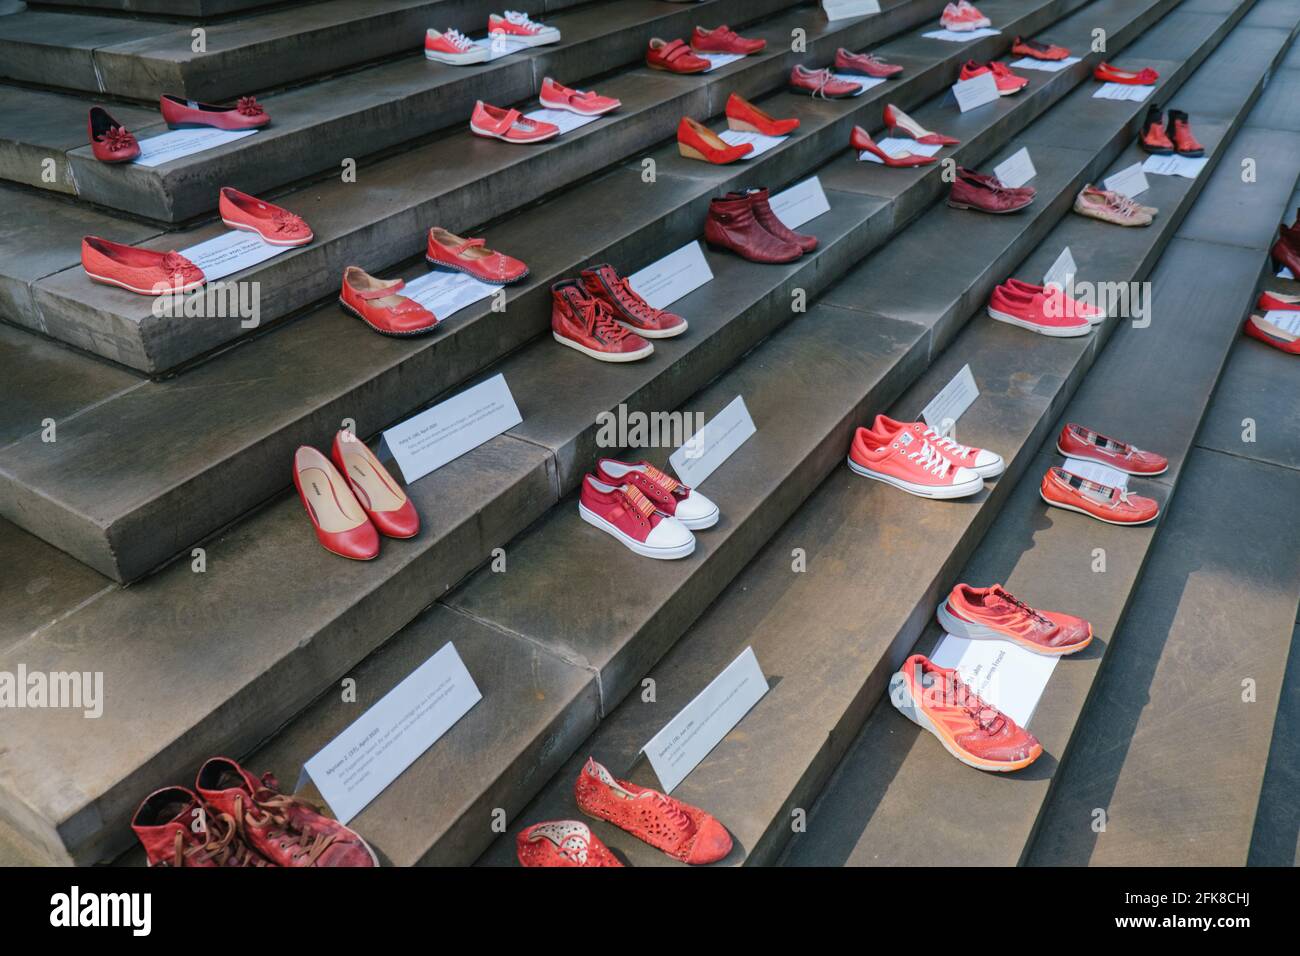 Hannover, Deutschland. April 2021. Rote Schuhe stehen vor dem niedersächsischen Parlament während der Kampagne „Rote Schuhe“ gegen den Austritt der Türkei aus der Istanbuler Konvention. Jedes Paar Schuhe steht für eine Frau, die durch Gewalt gestorben ist. Die Farbe Rot steht für das verschüttete Blut. Die Aktionsform geht auf die mexikanische Künstlerin Elina Chauvet zurück, die 2009 das Projekt 'Zapatos Rojos' ('Rote Schuhe') ins Leben gerufen hat und bereits Aktionen mit roten Schuhen in verschiedenen Ländern durchgeführt hat, um verschwundene, misshandelte, vergewaltigte und ermordete Frauen zu gedenken. Quelle: Ole Spata/dpa/Alamy Live News Stockfoto